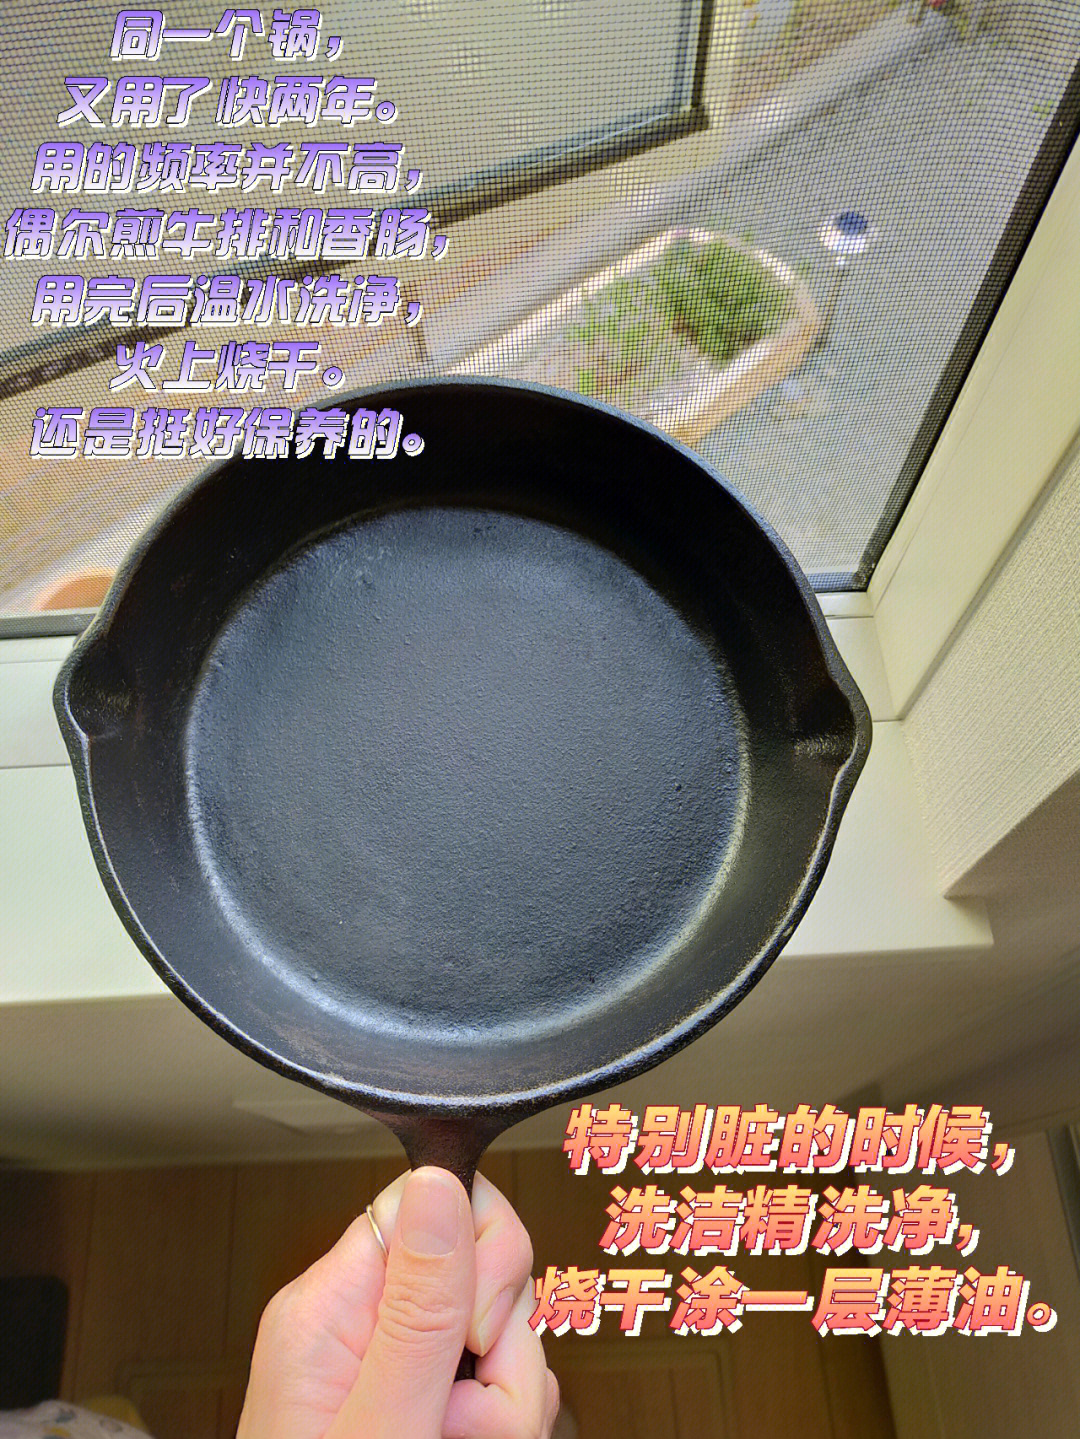 铸铁锅开锅方法图片